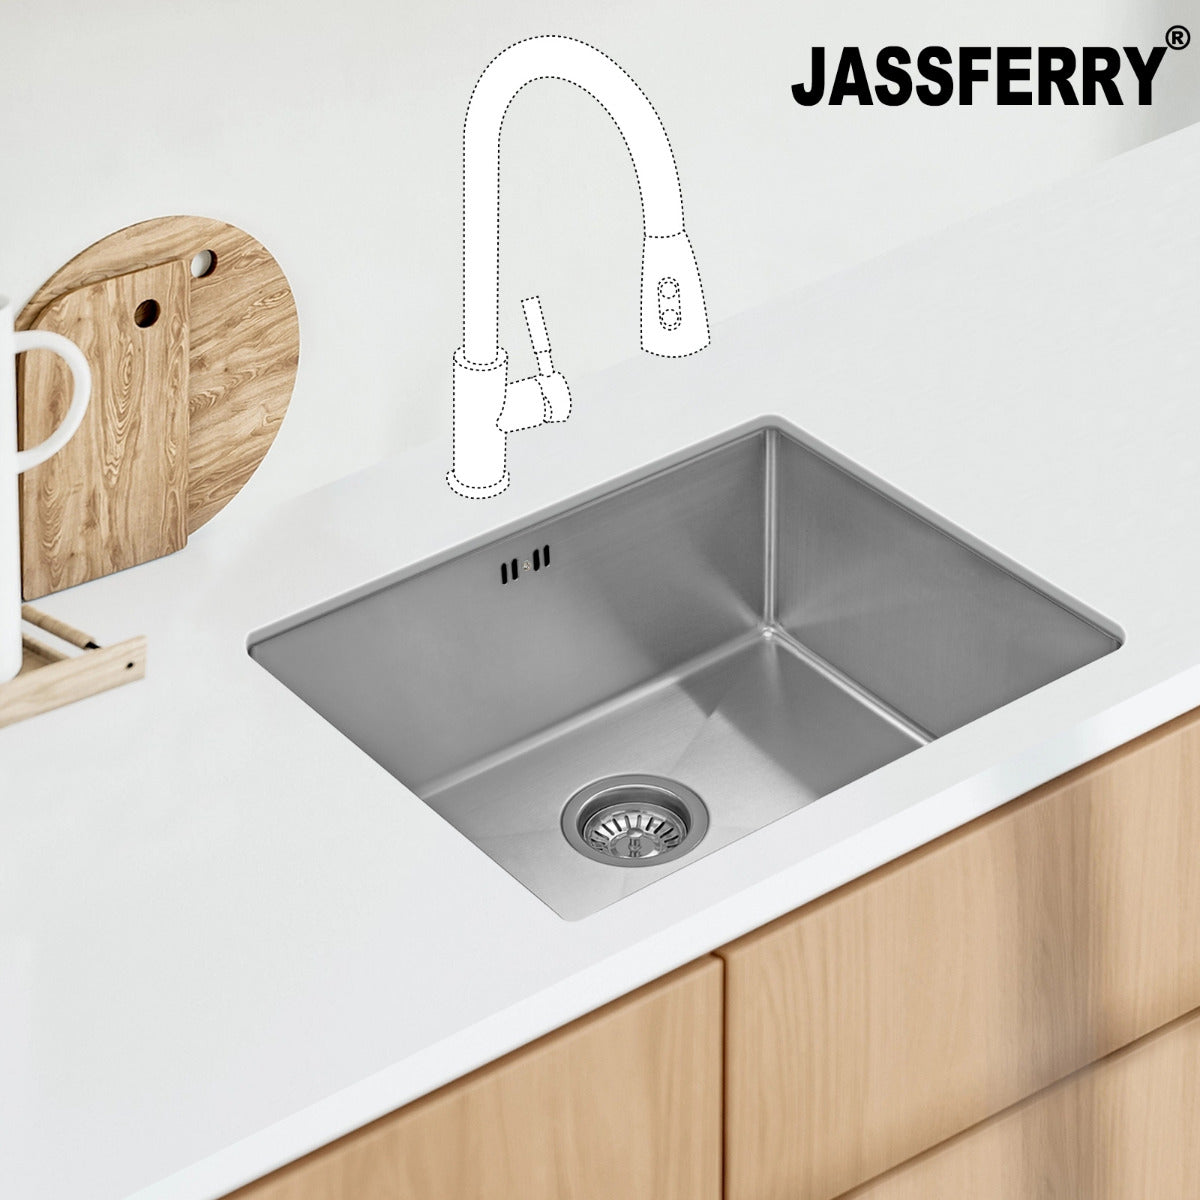 JassferryJASSFERRY Undermount Stainless Steel Kitchen Sink Handmade 1 Bowl - 785Kitchen Sinks